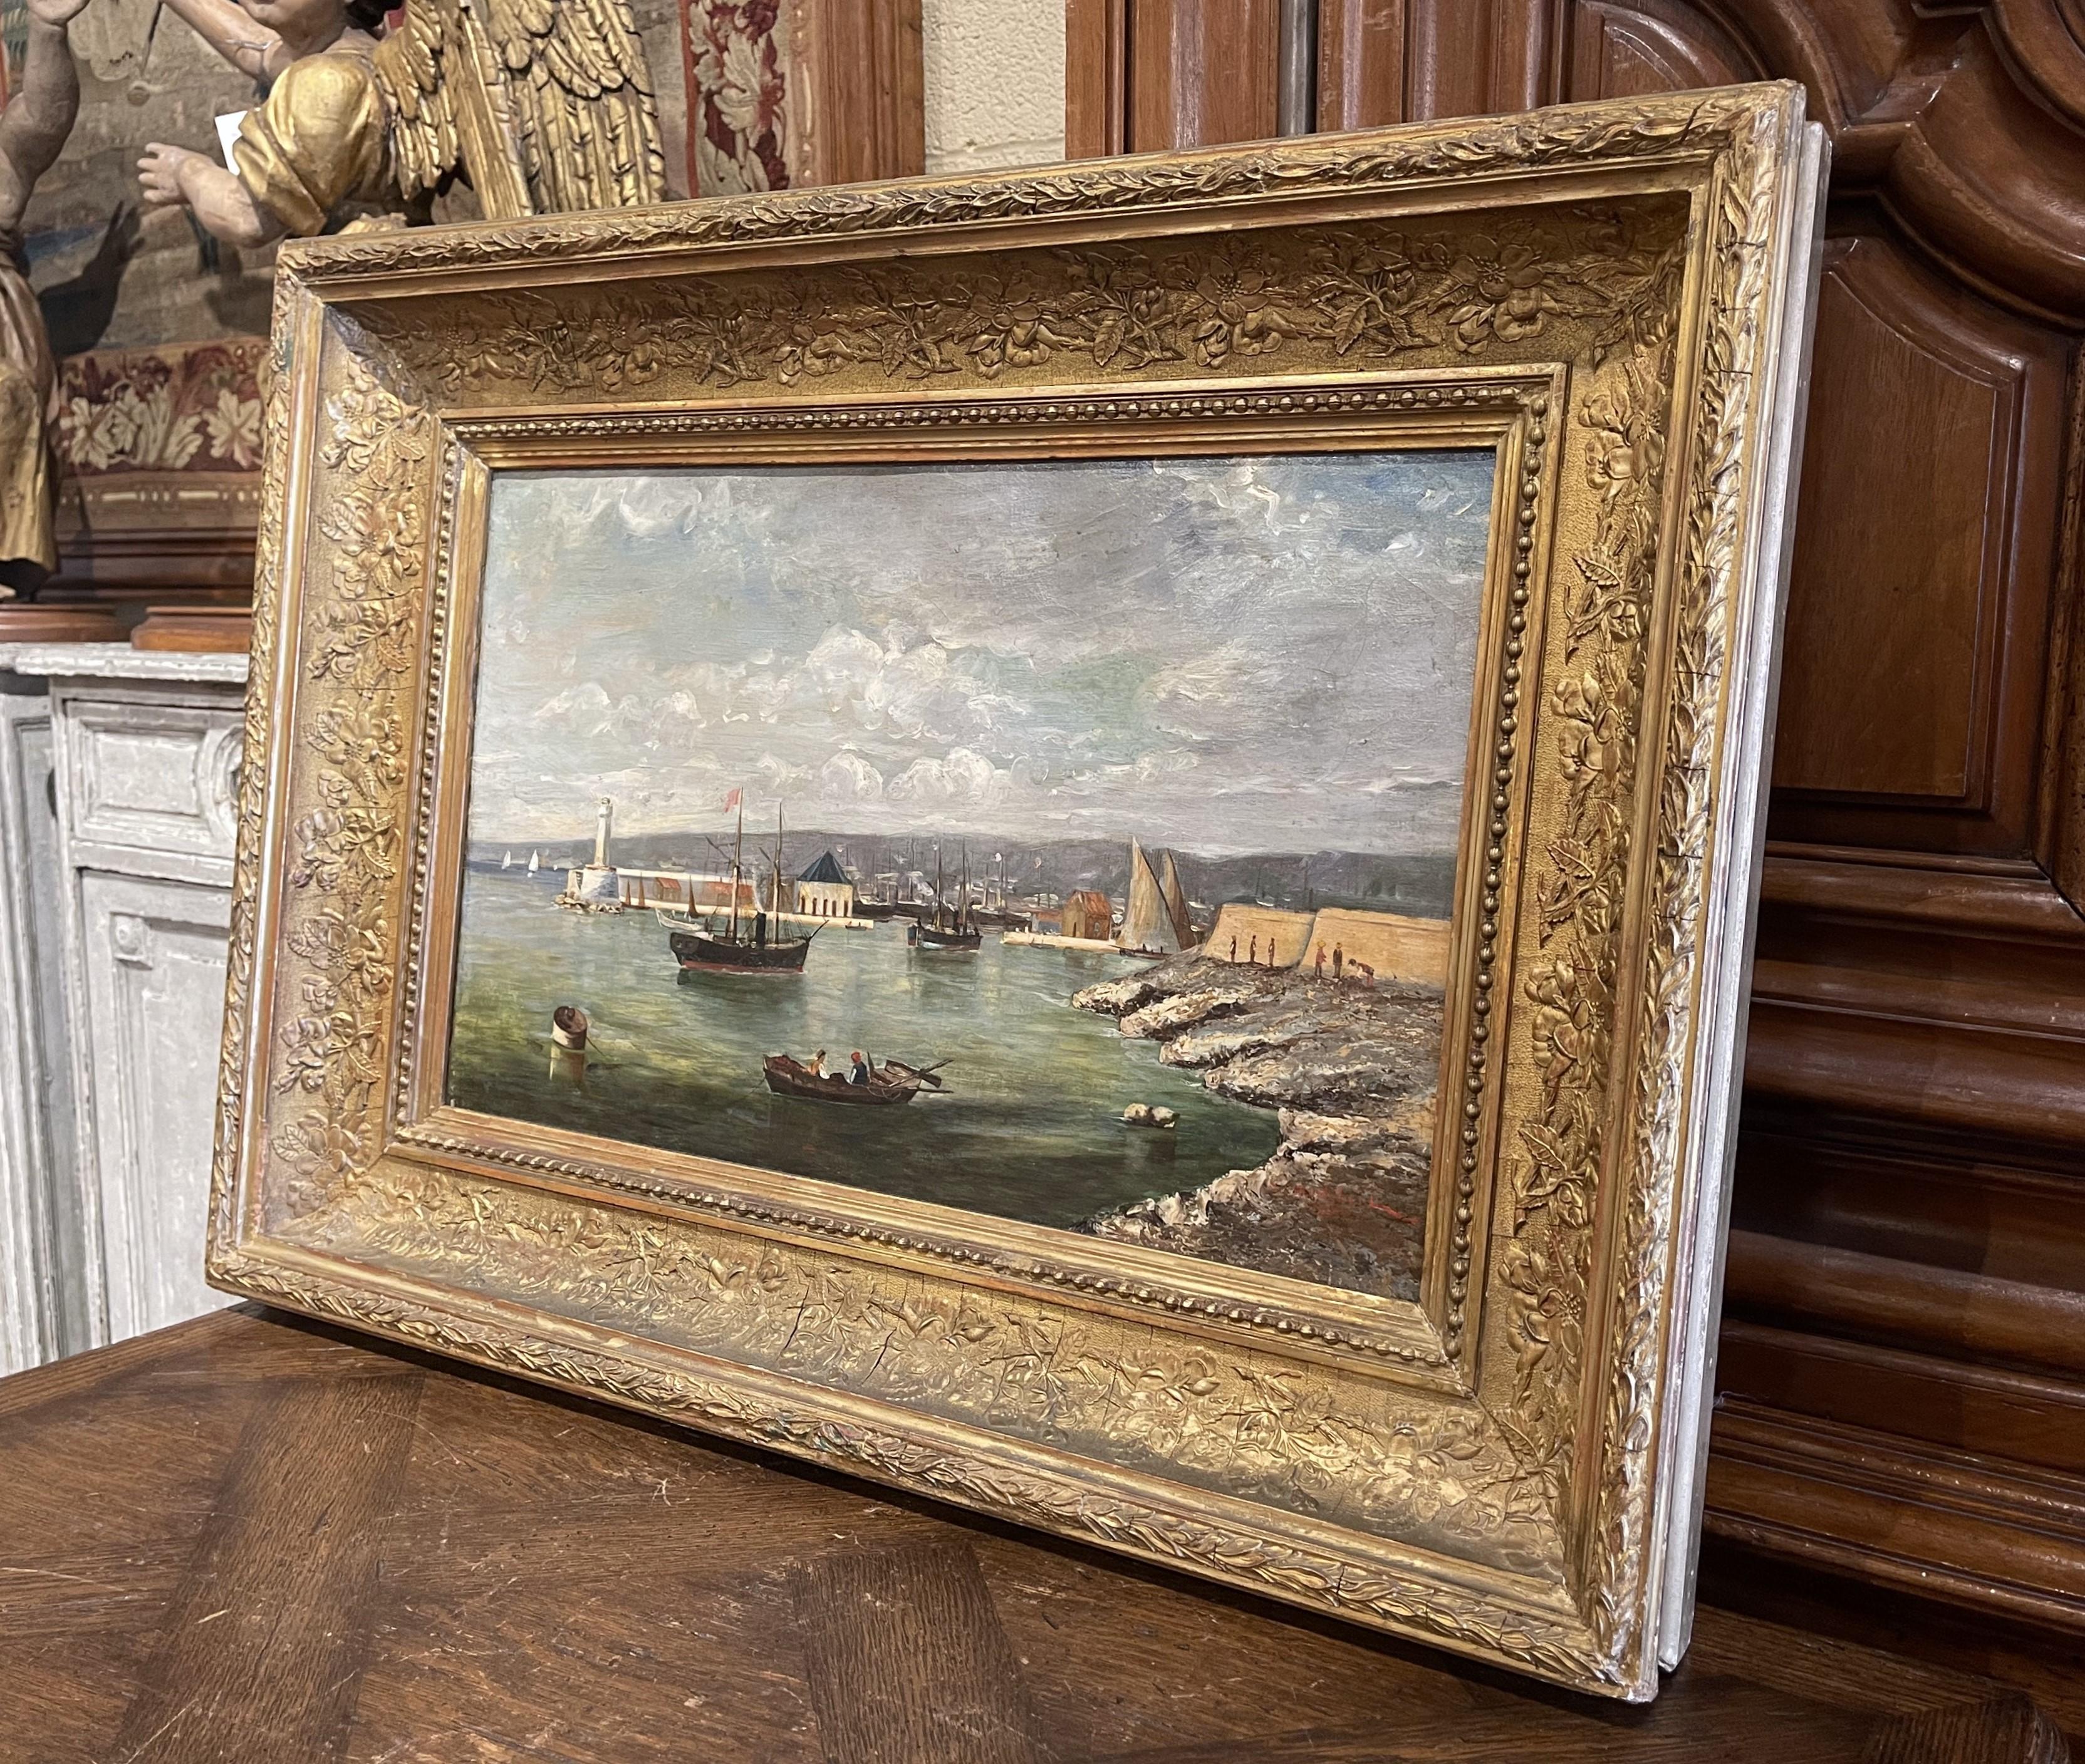  Peinte vers 1885, cette œuvre d'art sur toile est placée dans son cadre original en bois sculpté et doré. La scène illustre le paysage pittoresque du 